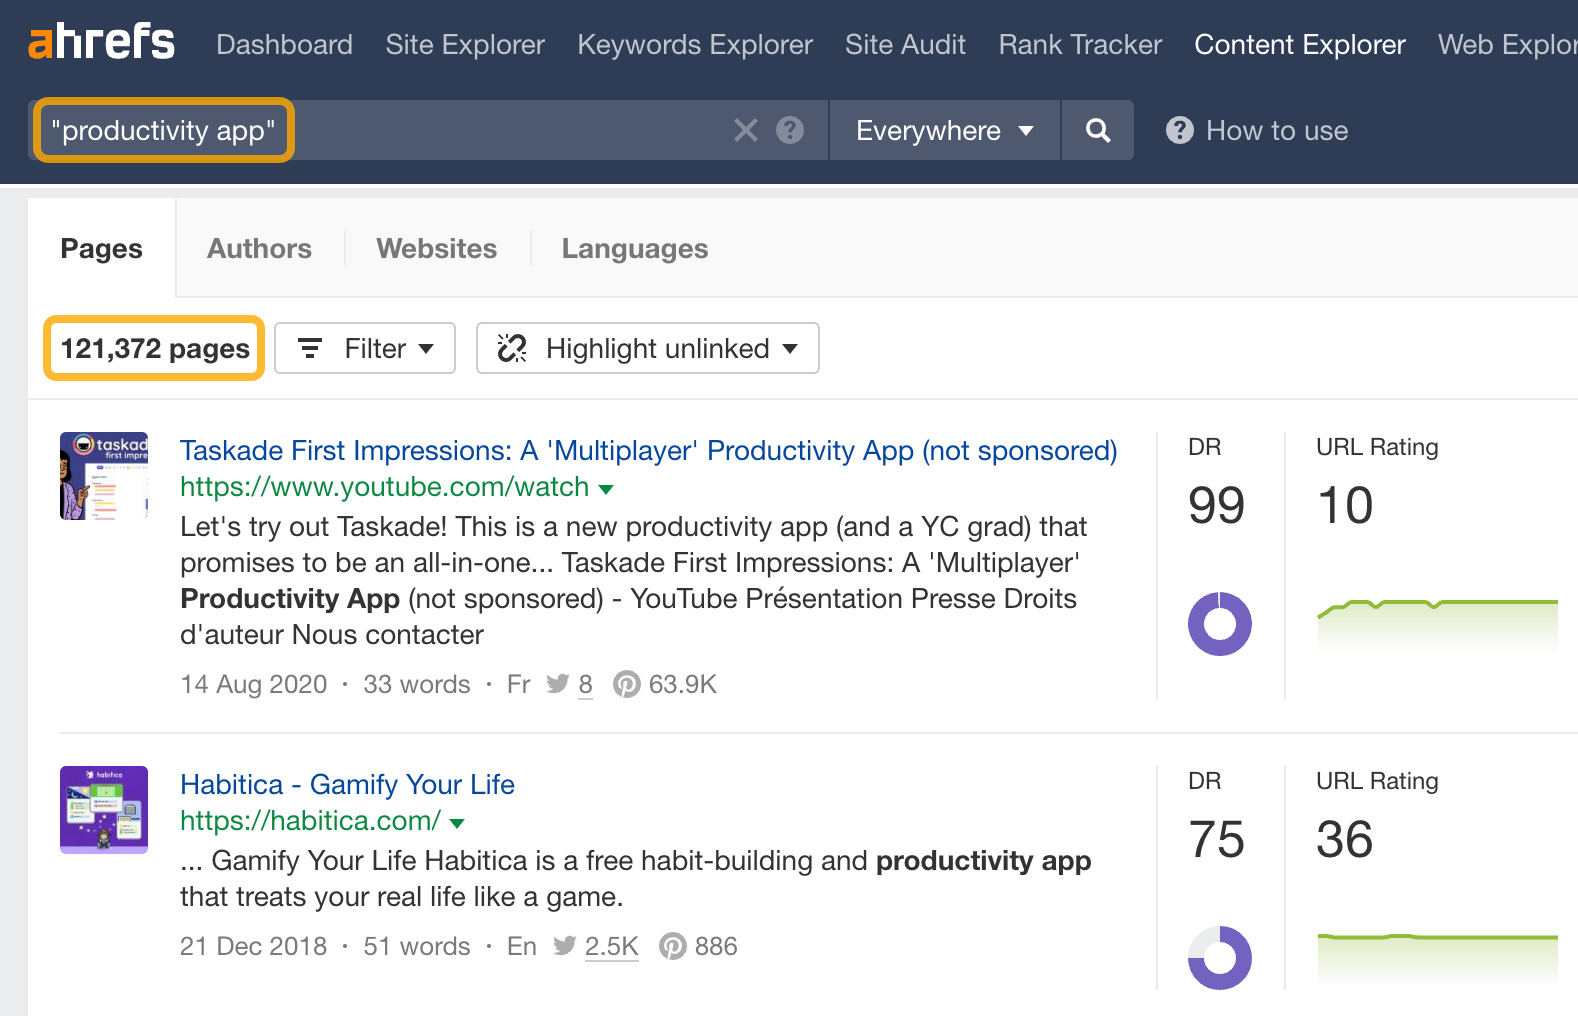 120K+ pages that mention "productivity app," via Ahrefs' Content Explorer